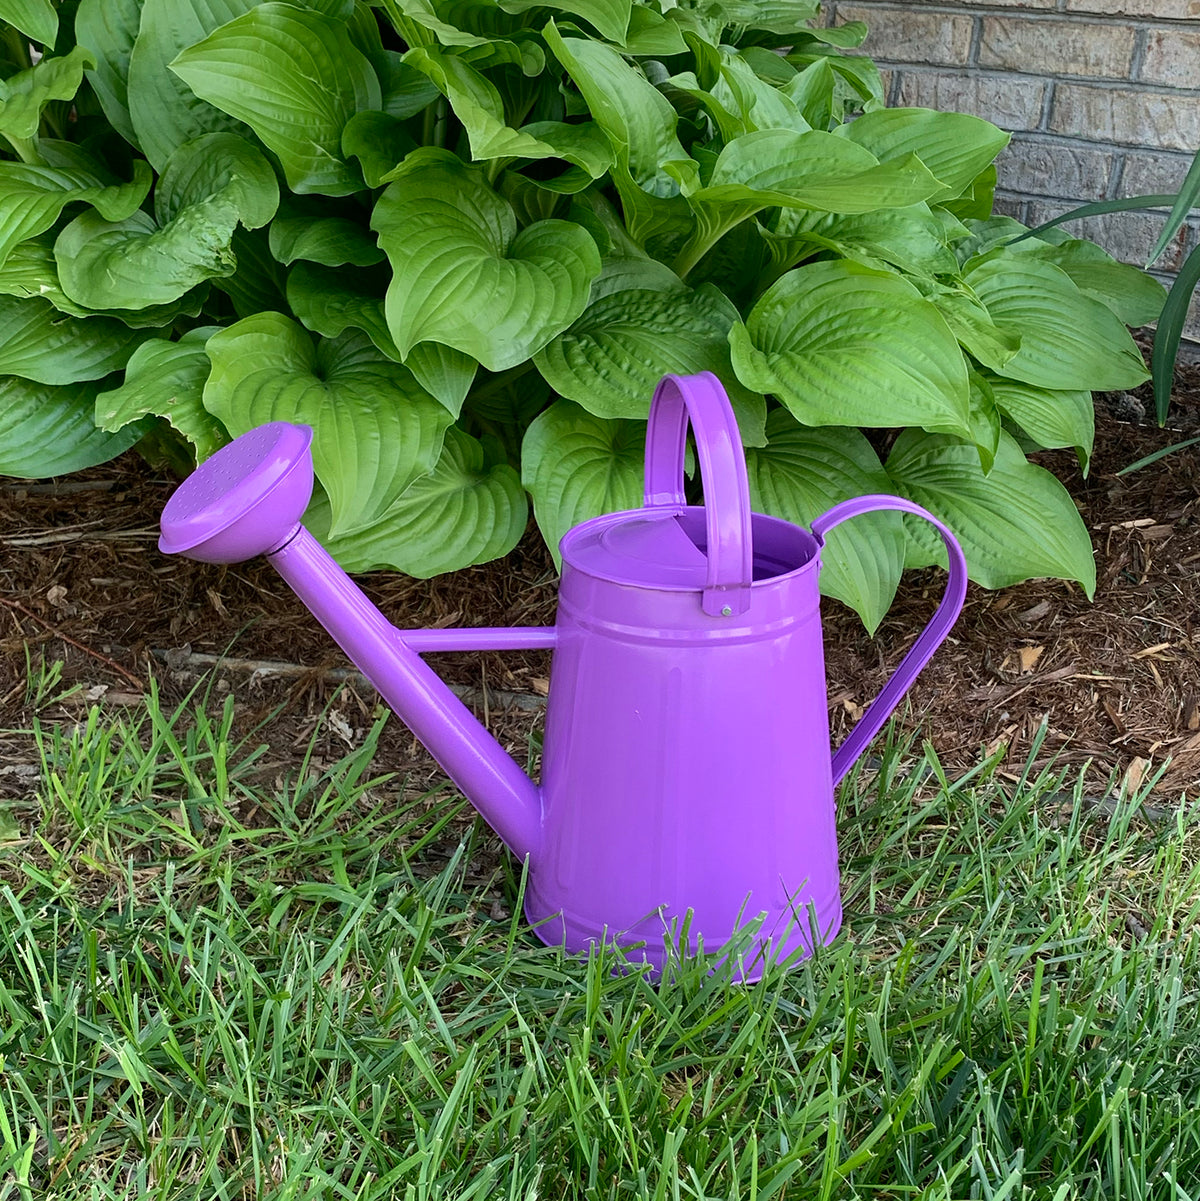 1.2 gal Violet Metal Watering Can